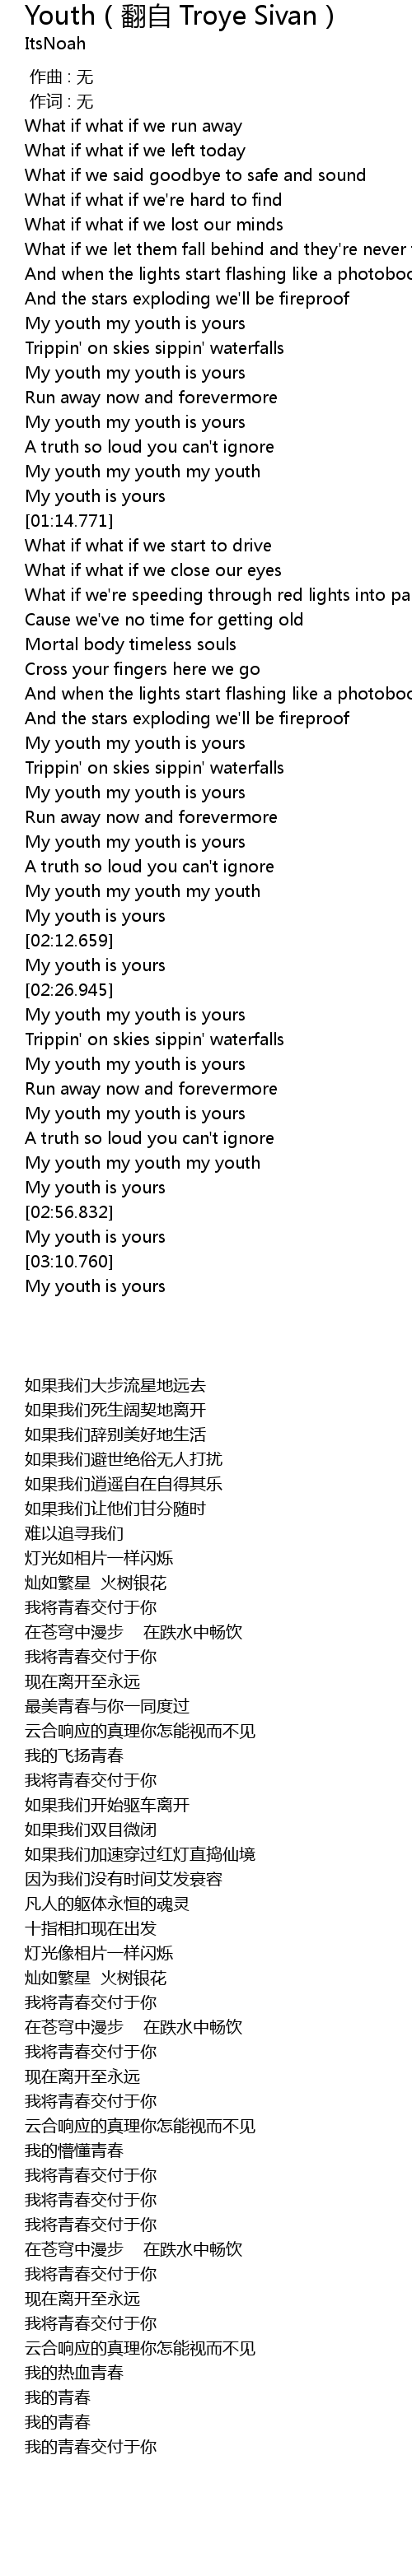 Youth ç¿»èª Troye Sivan Youth Fan Zi Troye Sivan Lyrics Follow Lyrics From the album blue neighbourhood · copyright: youth ç¿»èª troye sivan youth fan zi